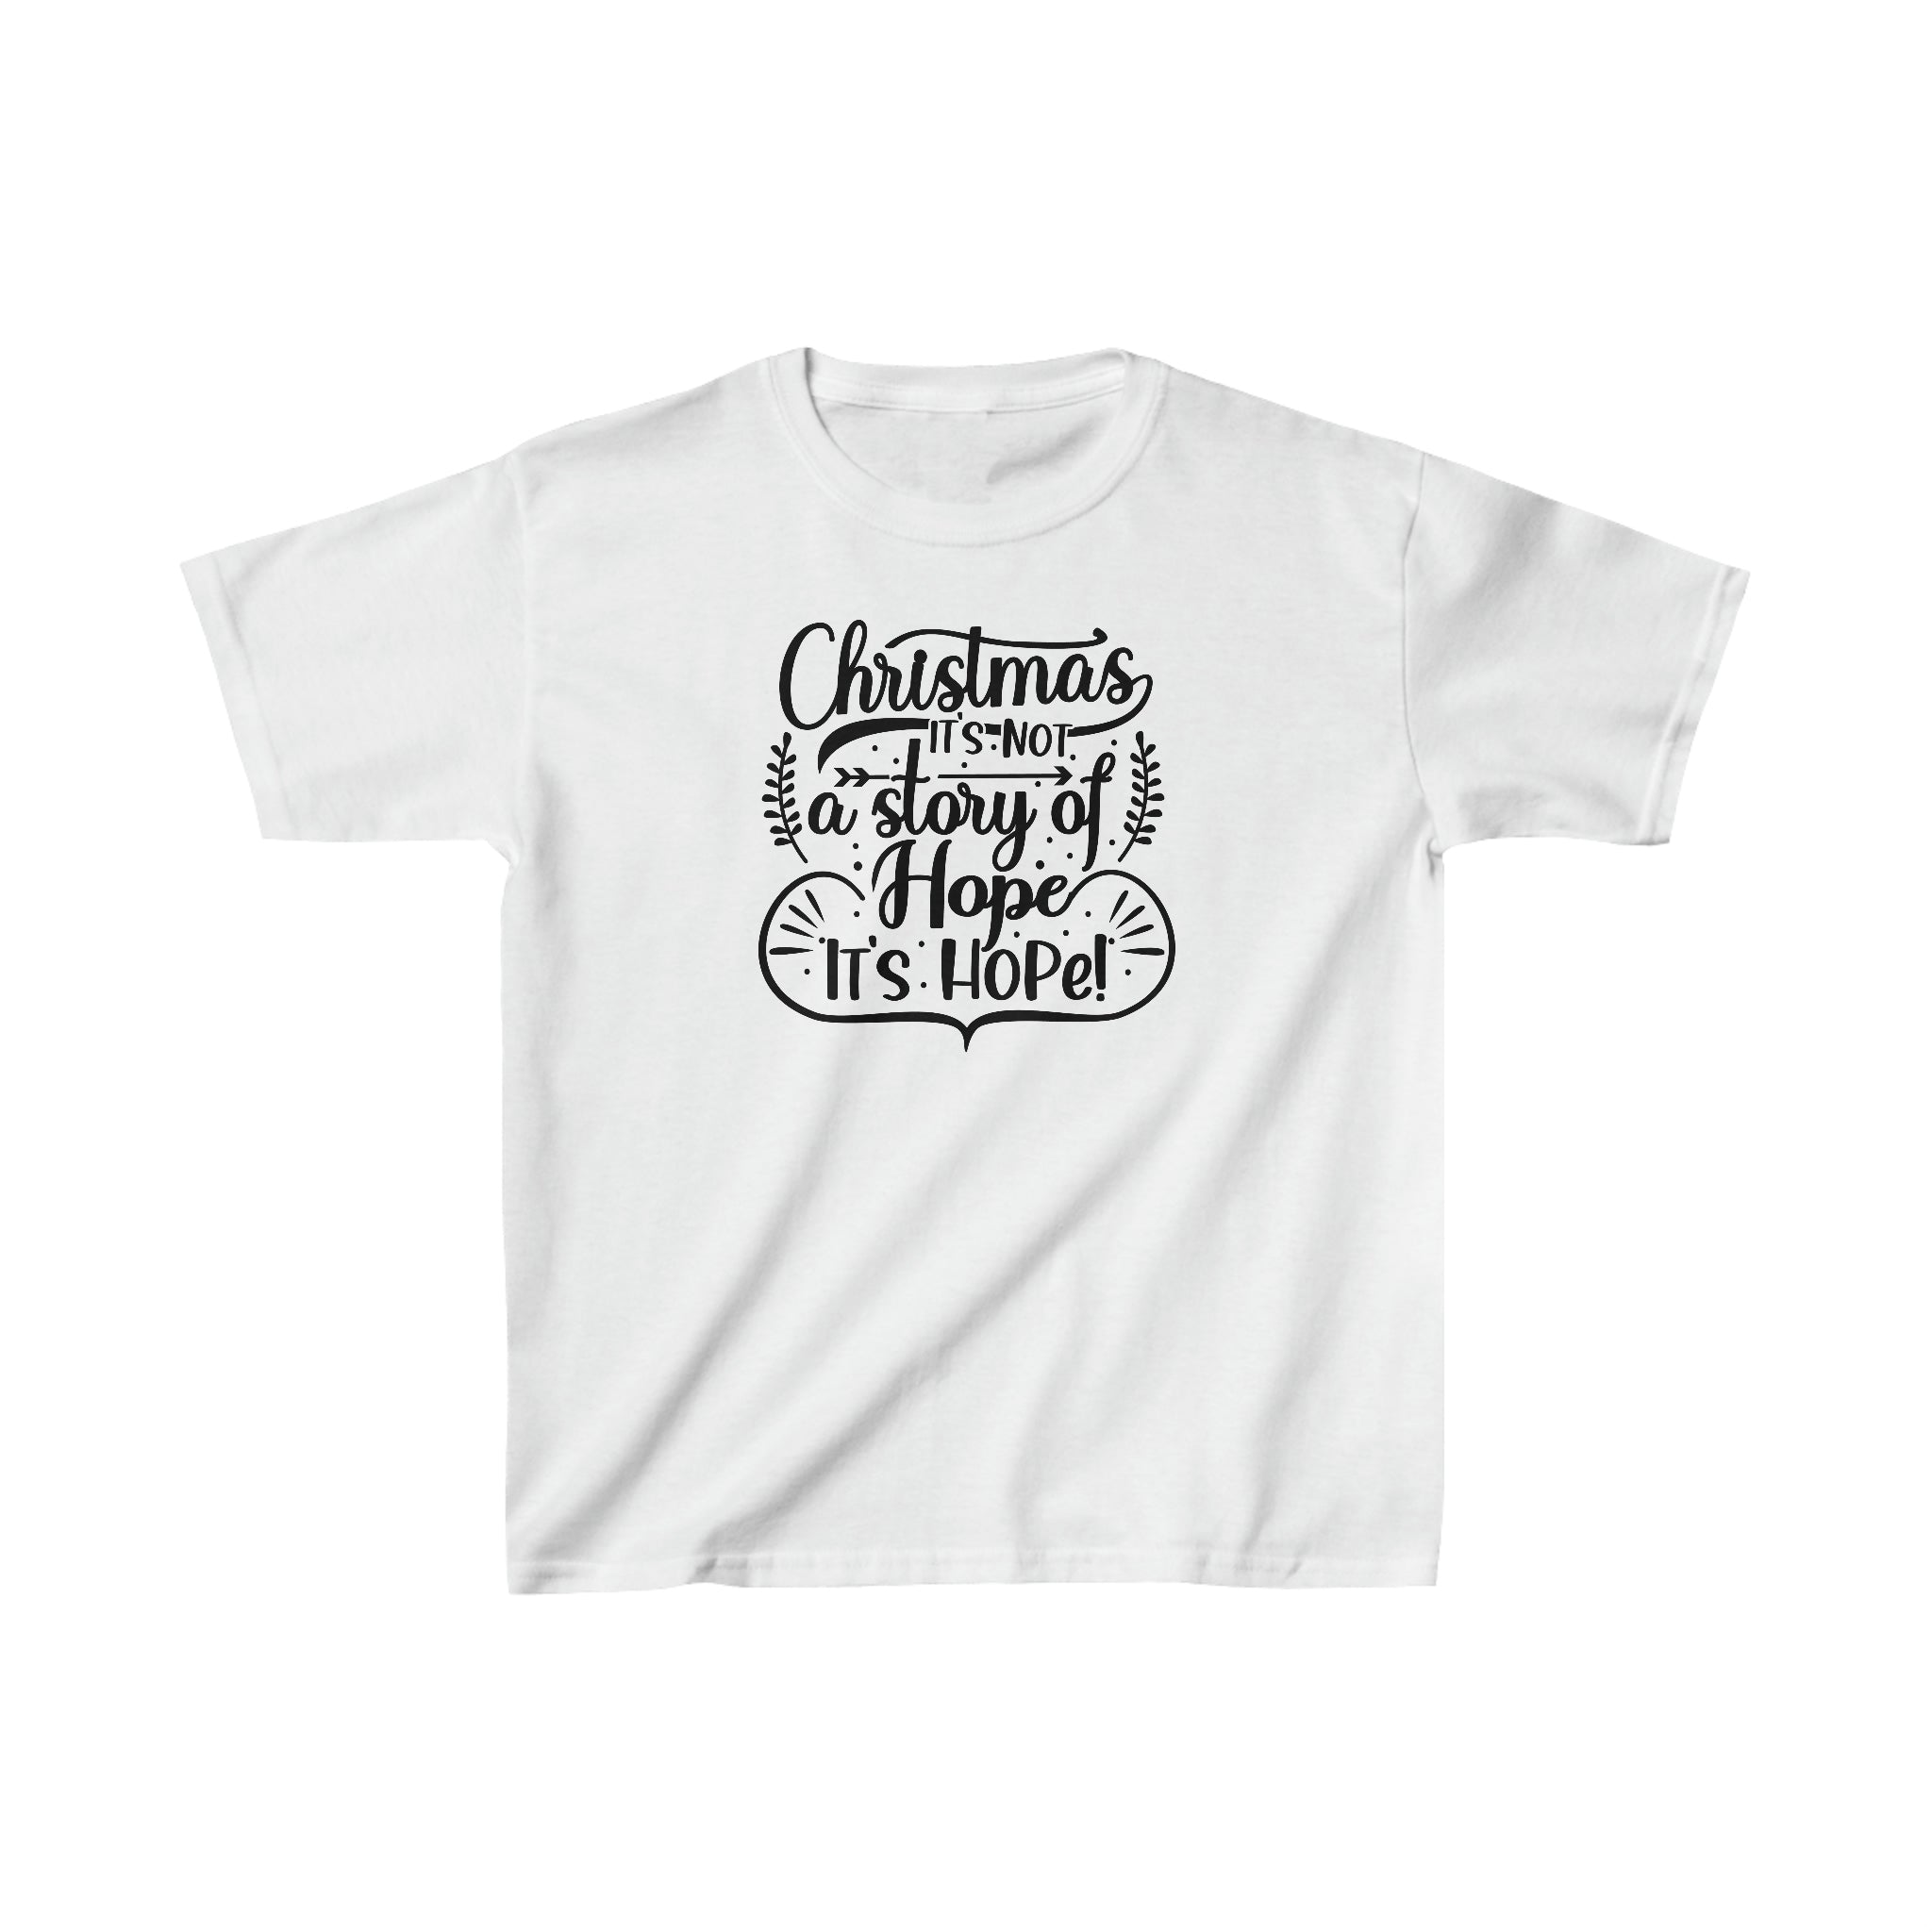 Christmas is Hope Kids Christmas Tee, Kids Christmas T-shirt, Merry Christmas Kids T-shirt, Unisex Kids T-shirts, Unisex jersey short sleeve kids tee